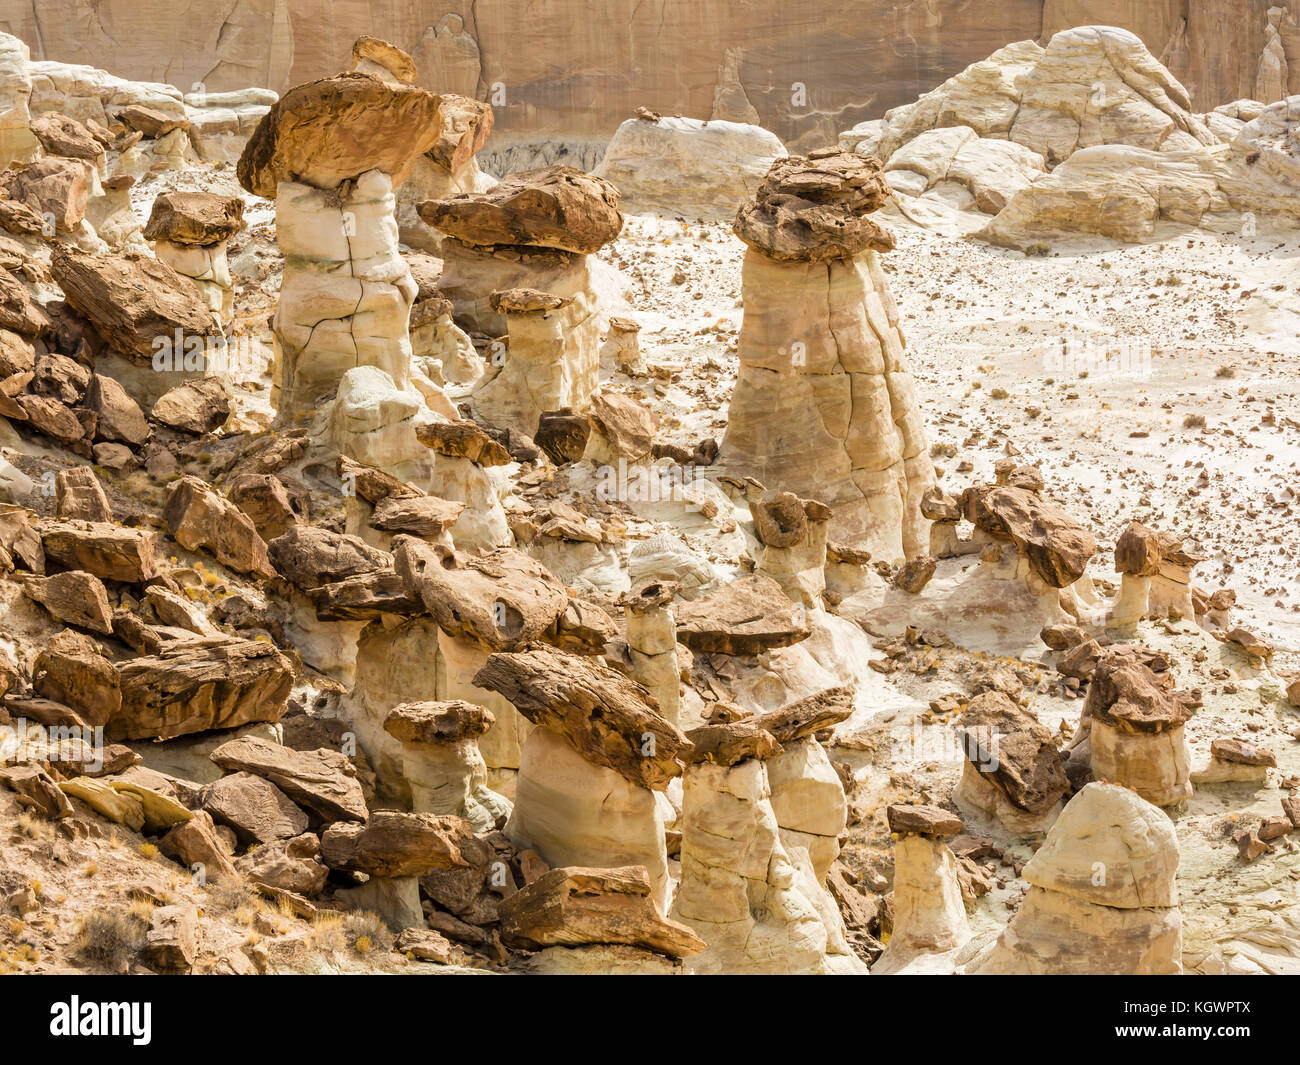 Braunen und weissen Schichten von entrada Sandstein Mix und Erstellen seltsame Hoodoos an der rimrocks Bereich des Grand Staircase Escalante National Monument in Utah. Stockfoto